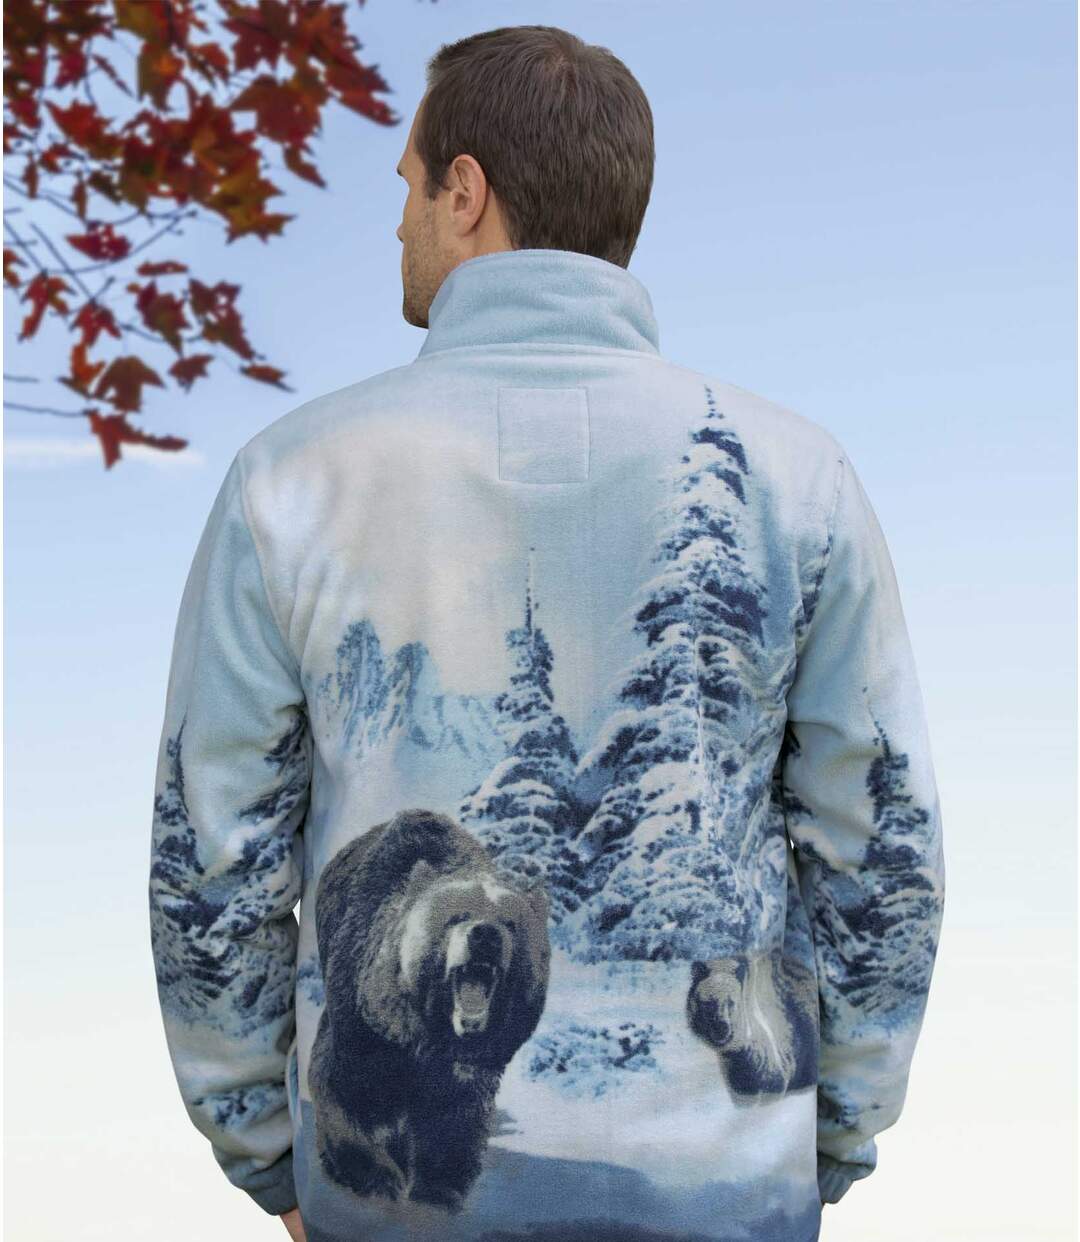 Polarowa bluza z wizerunkiem niedźwiedzia Atlas For Men